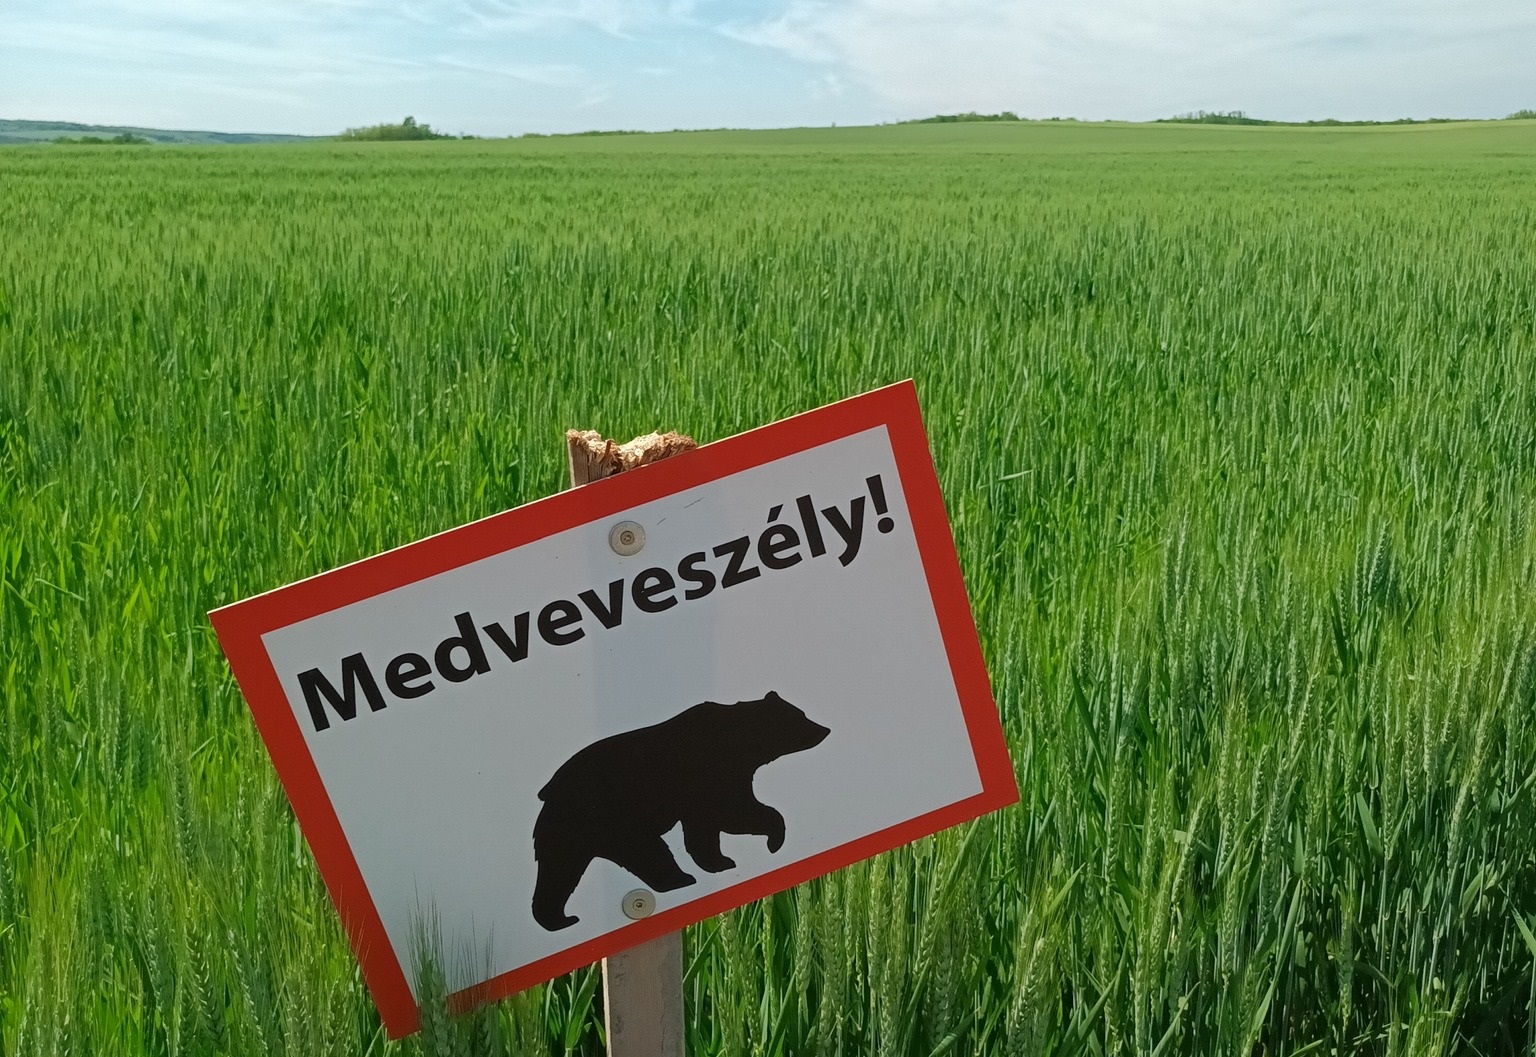 Magyarország egyre vonzóbb a medve, a farkas és társaik számára